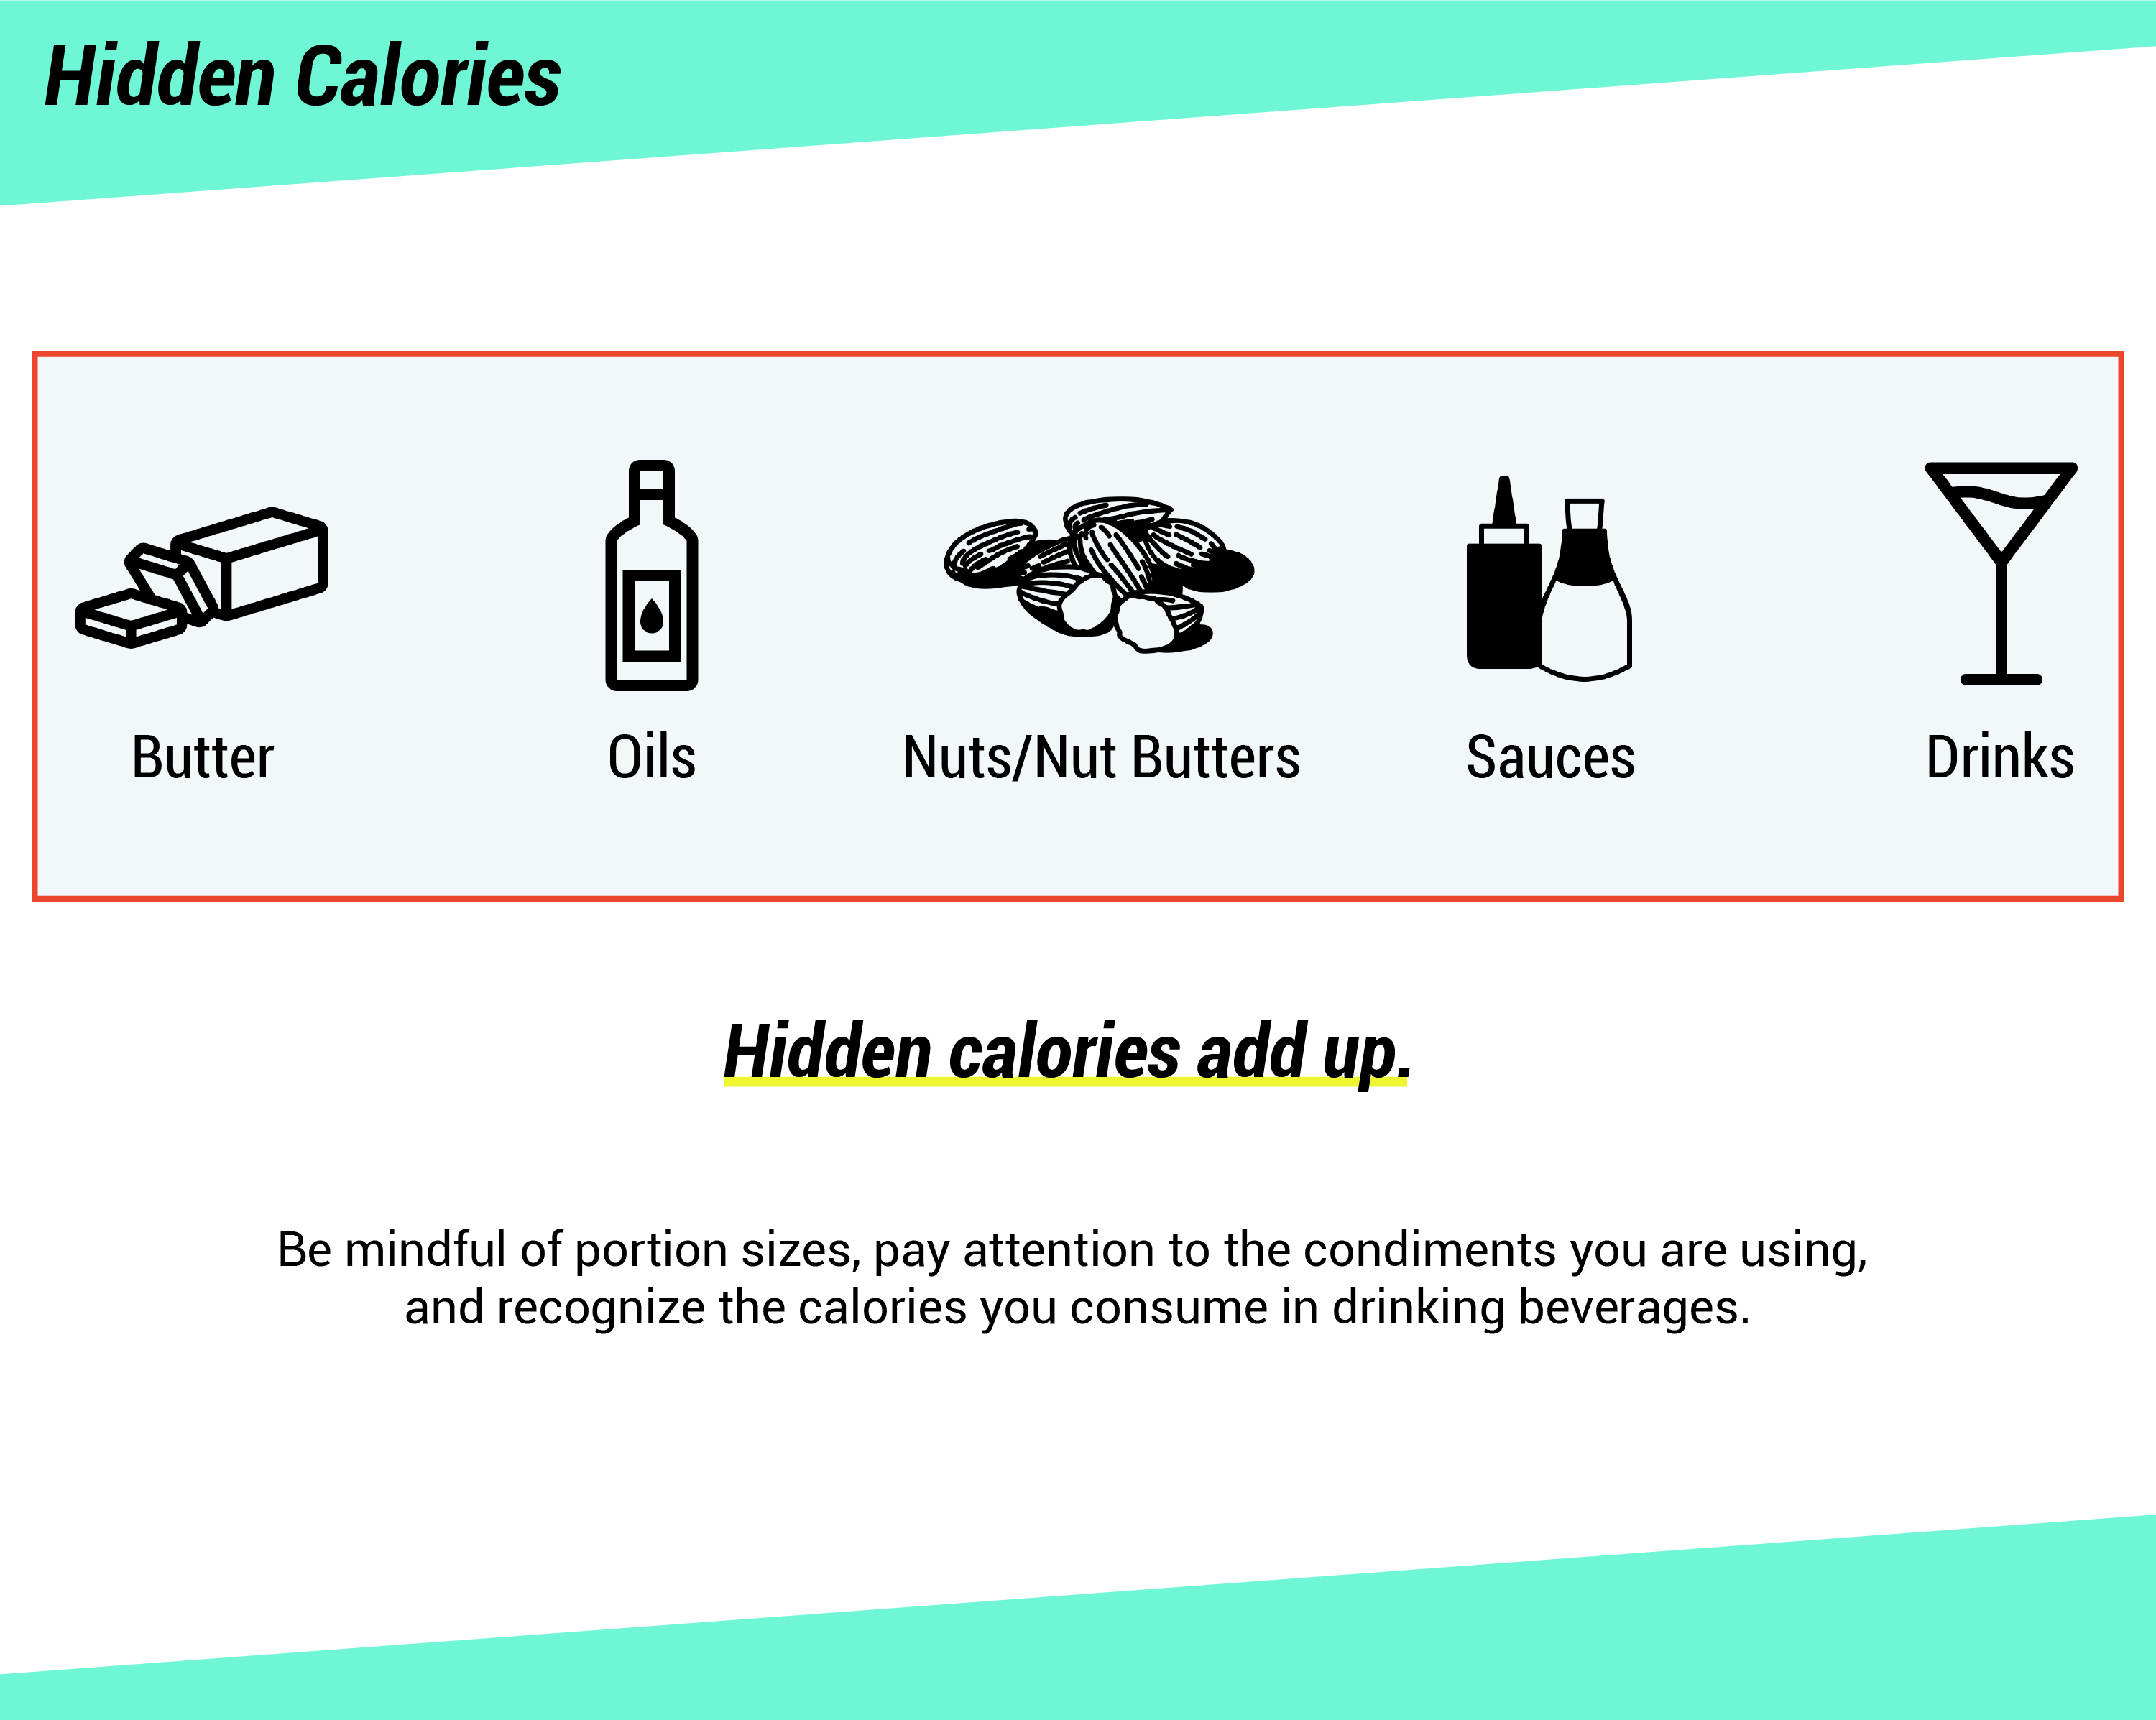 Un graphique montrant les aliments contenant des calories cachées : beurre, huiles, noix et beurres de noix, sauces, boissons